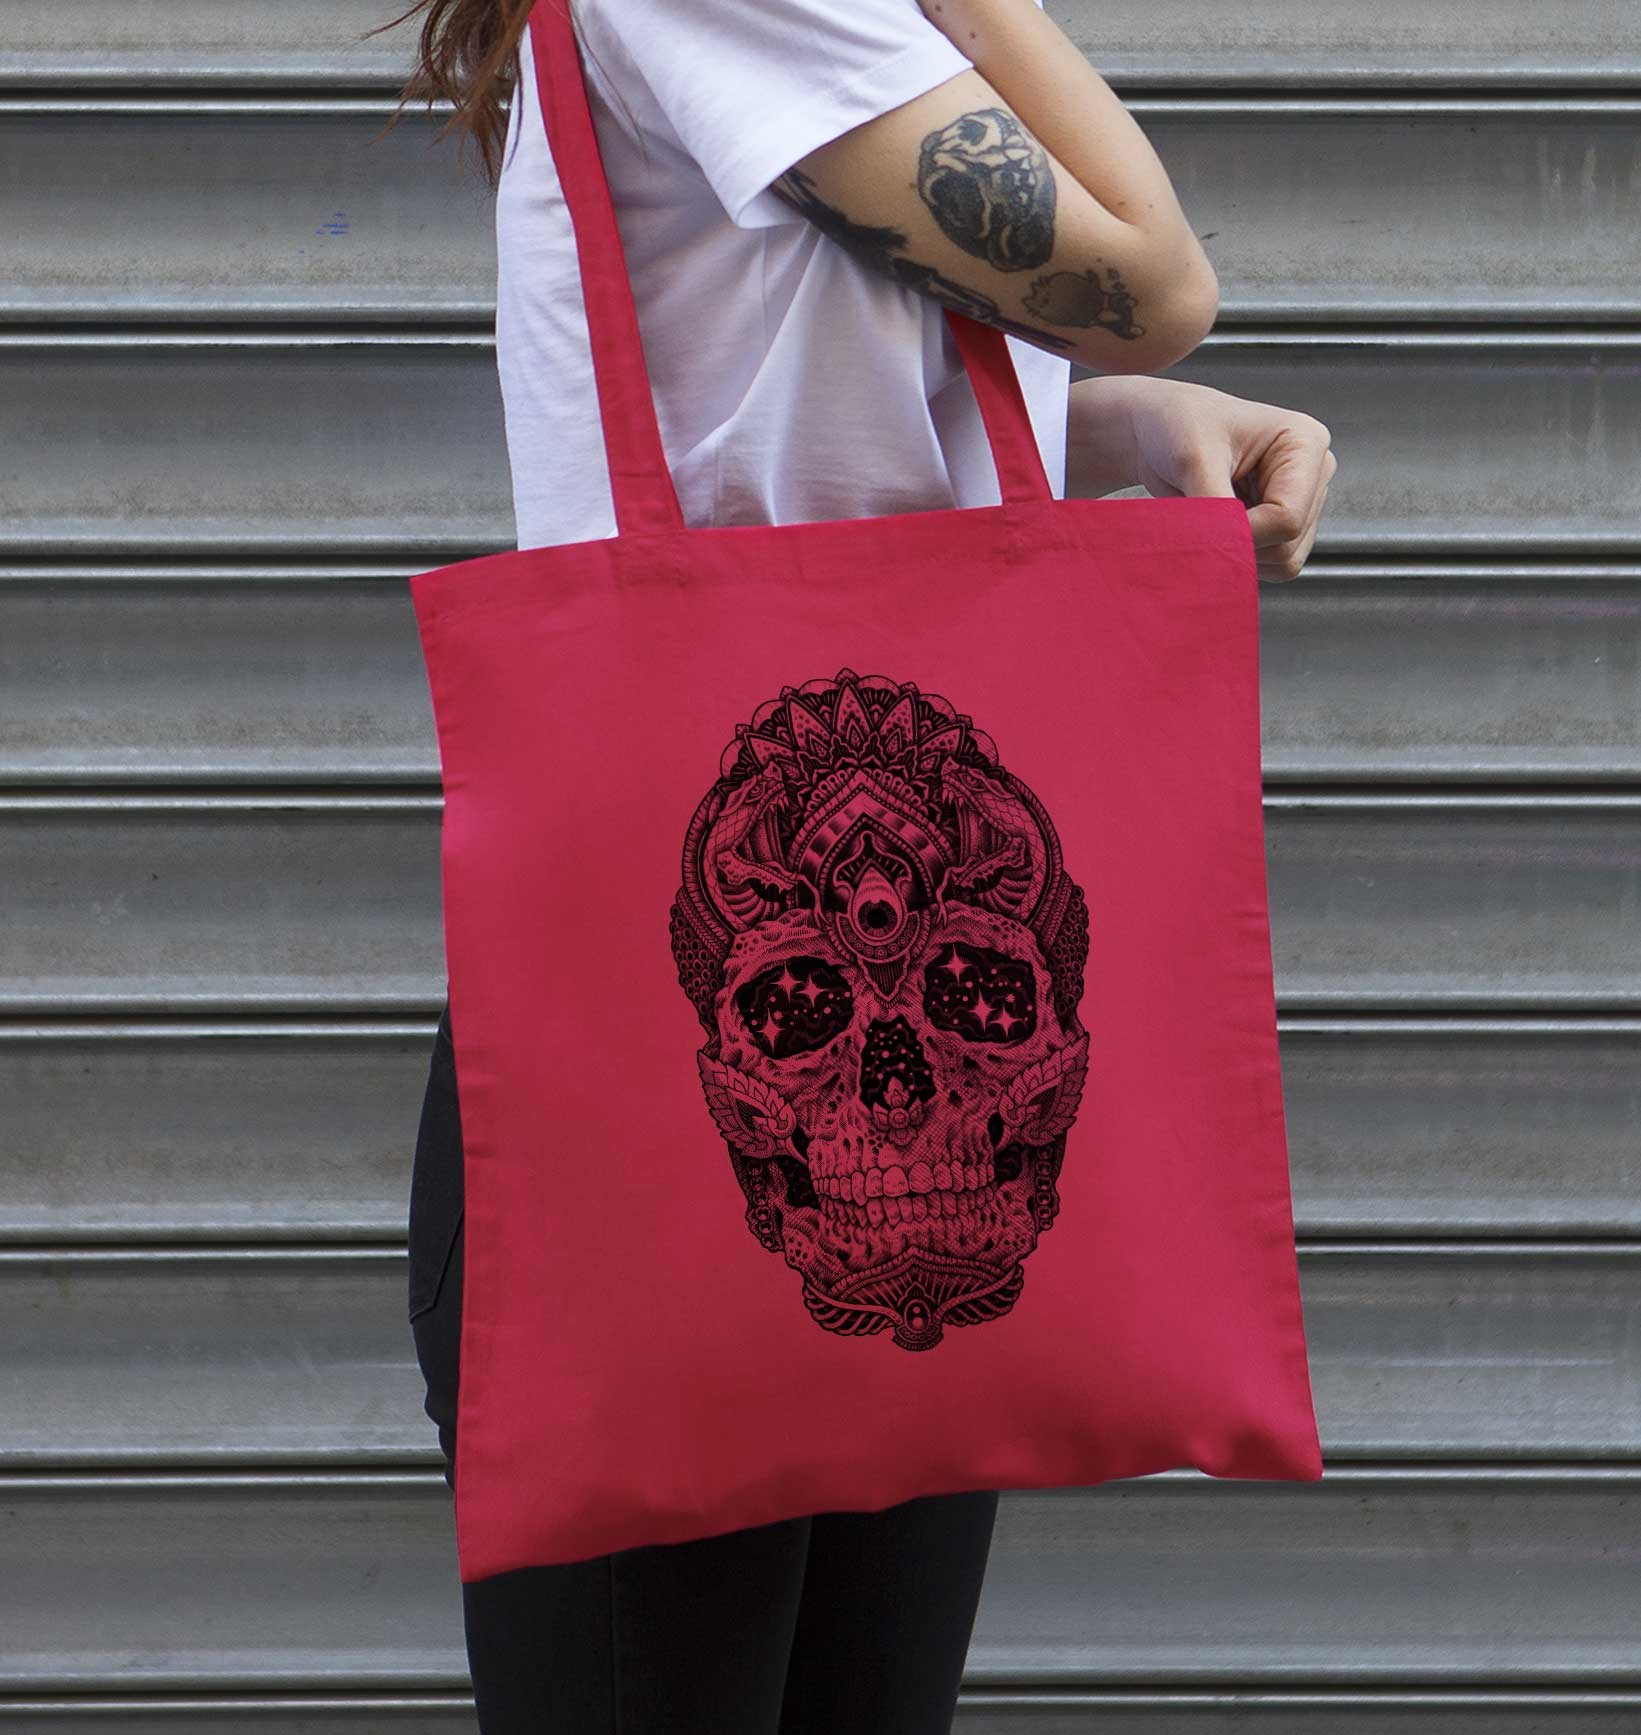 Tote Bag Cosmic Skull de couleur Rouge cranberry par Neon Mystic